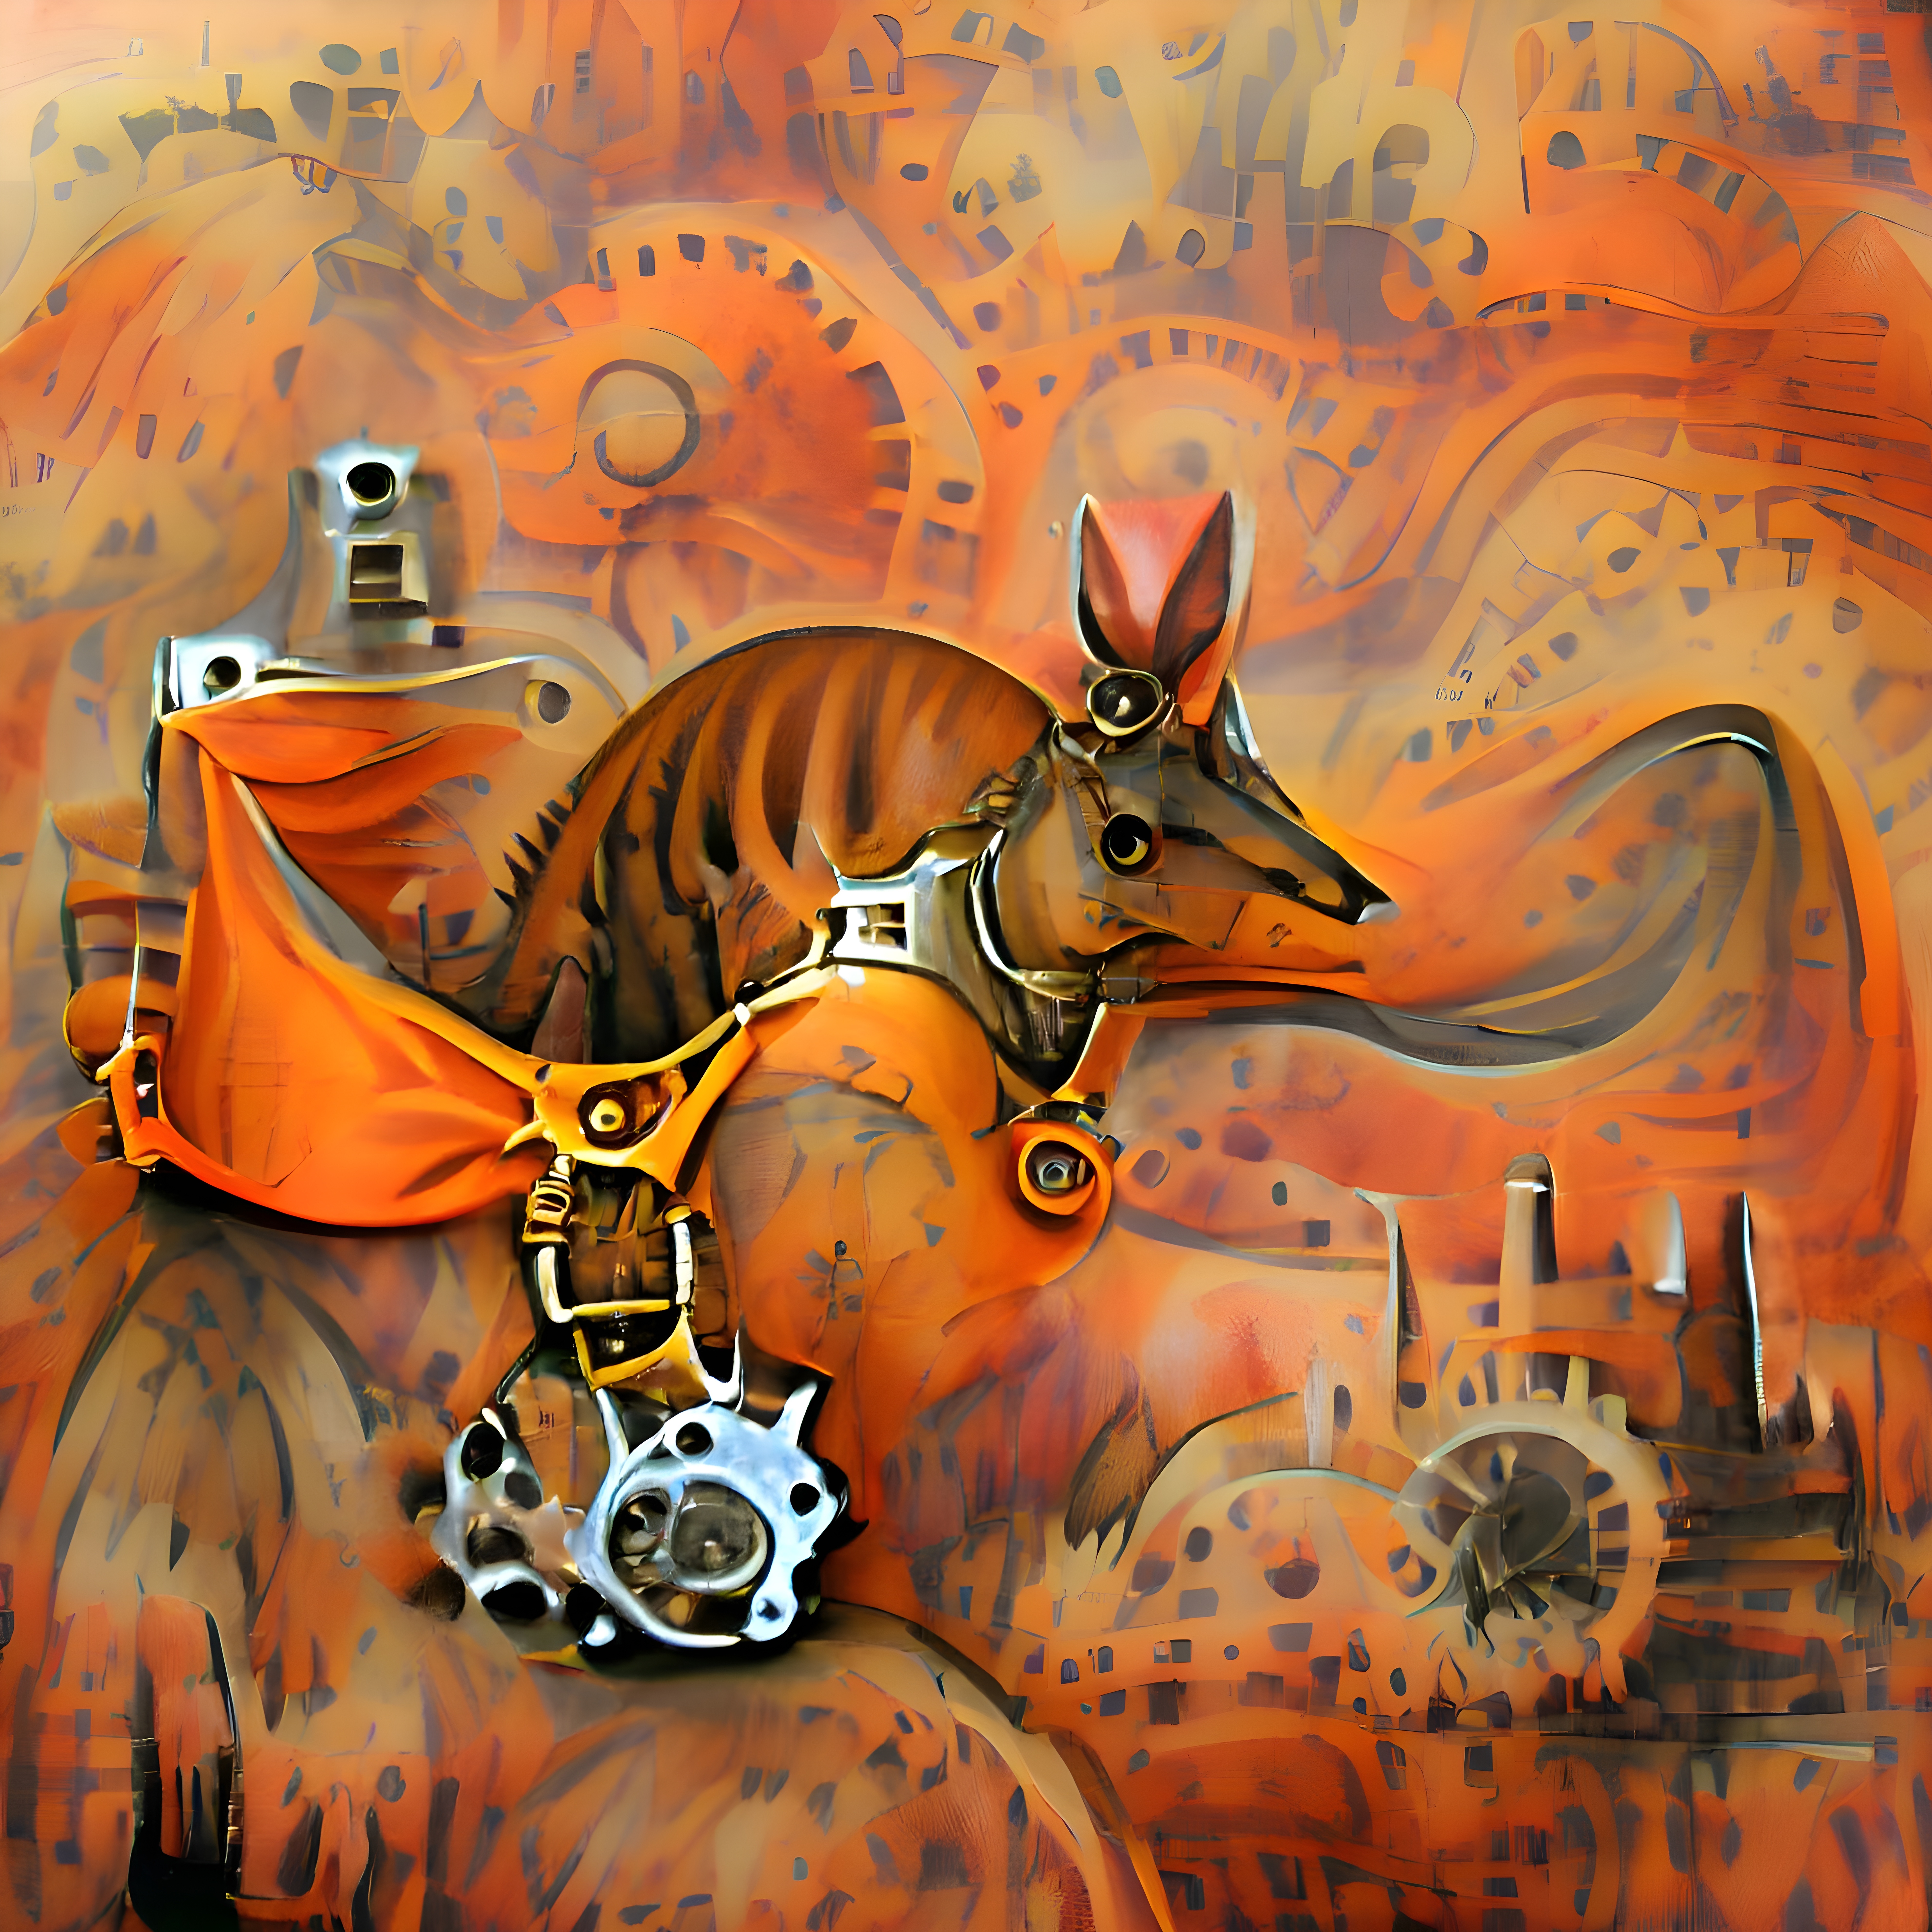 The Tanned Kangaroo